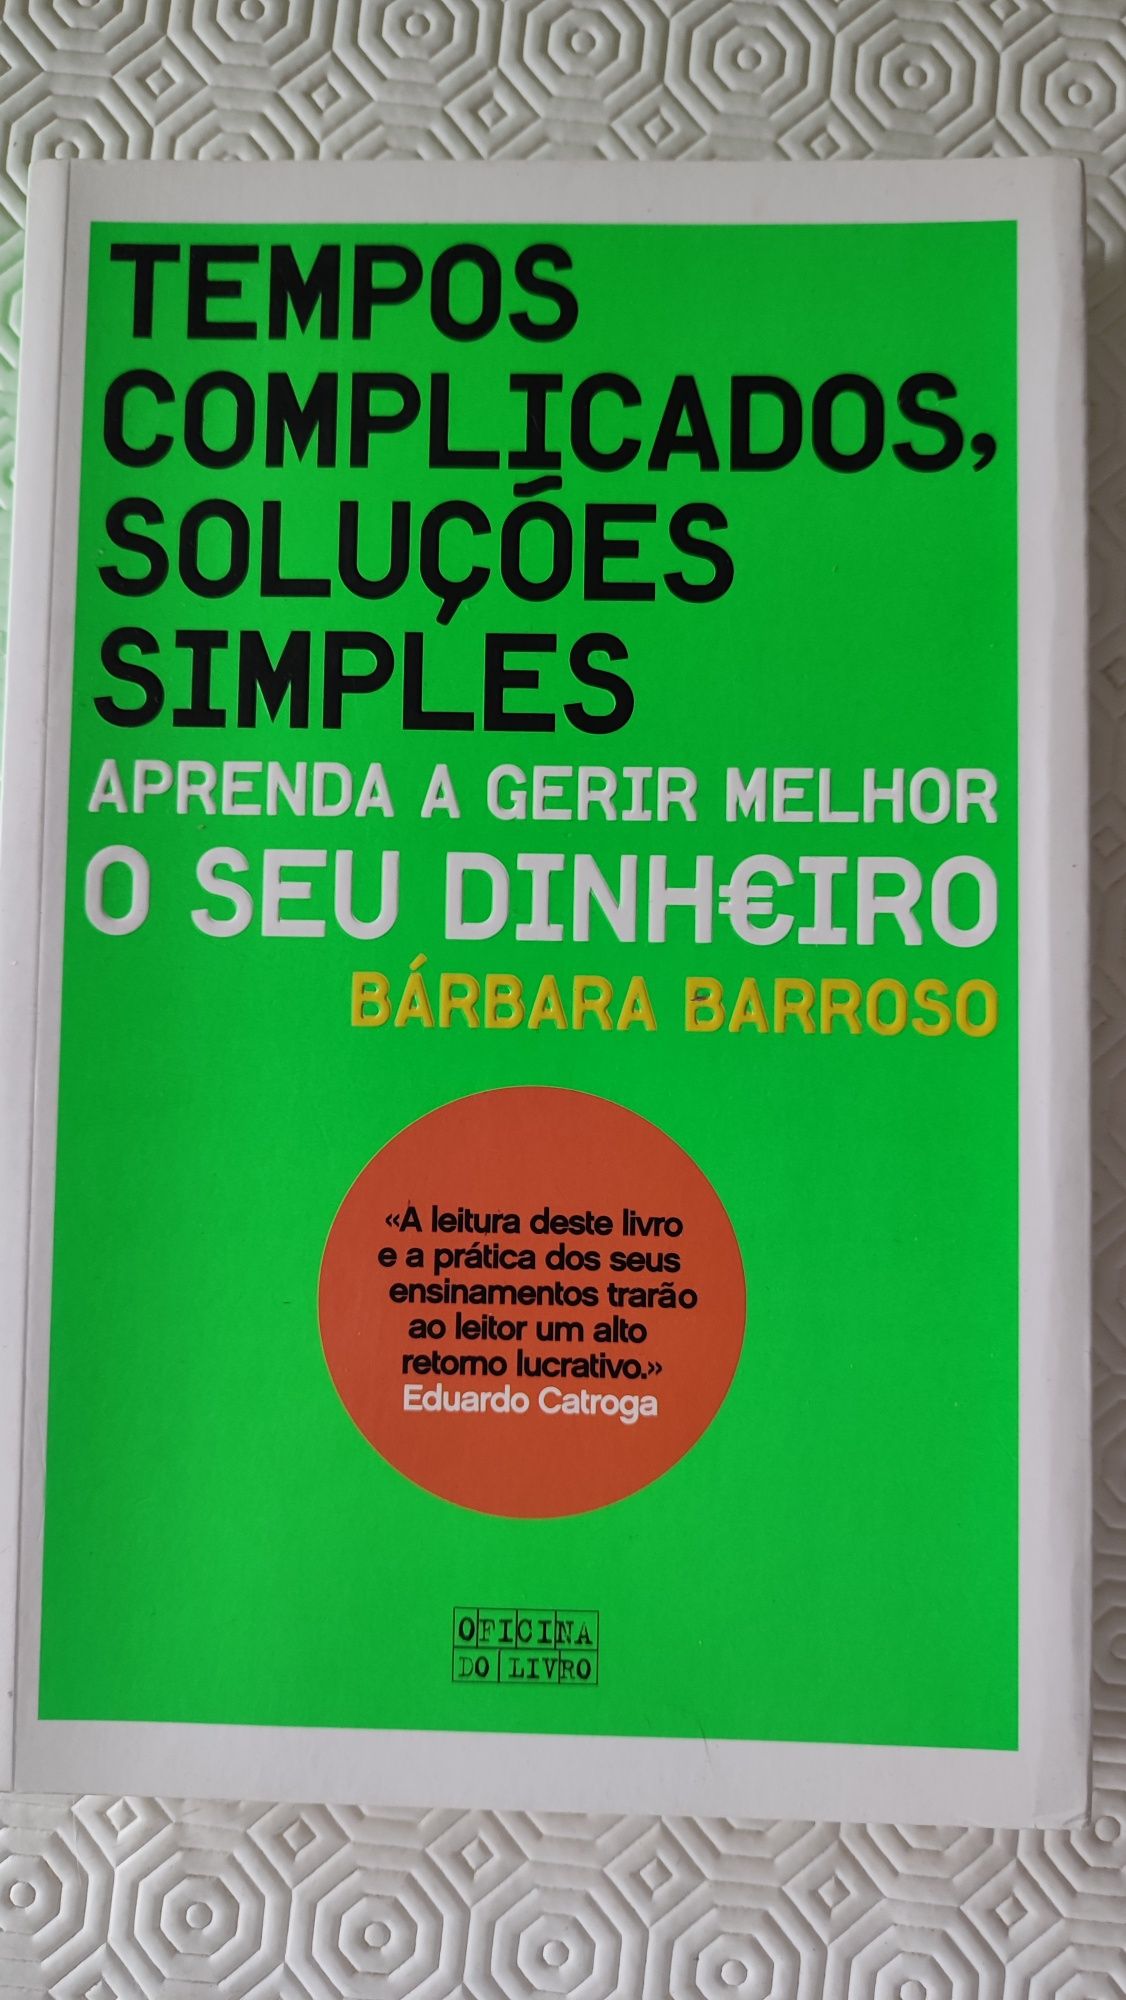 Tempos complicados, soluções simples, de Bárbara Barroso